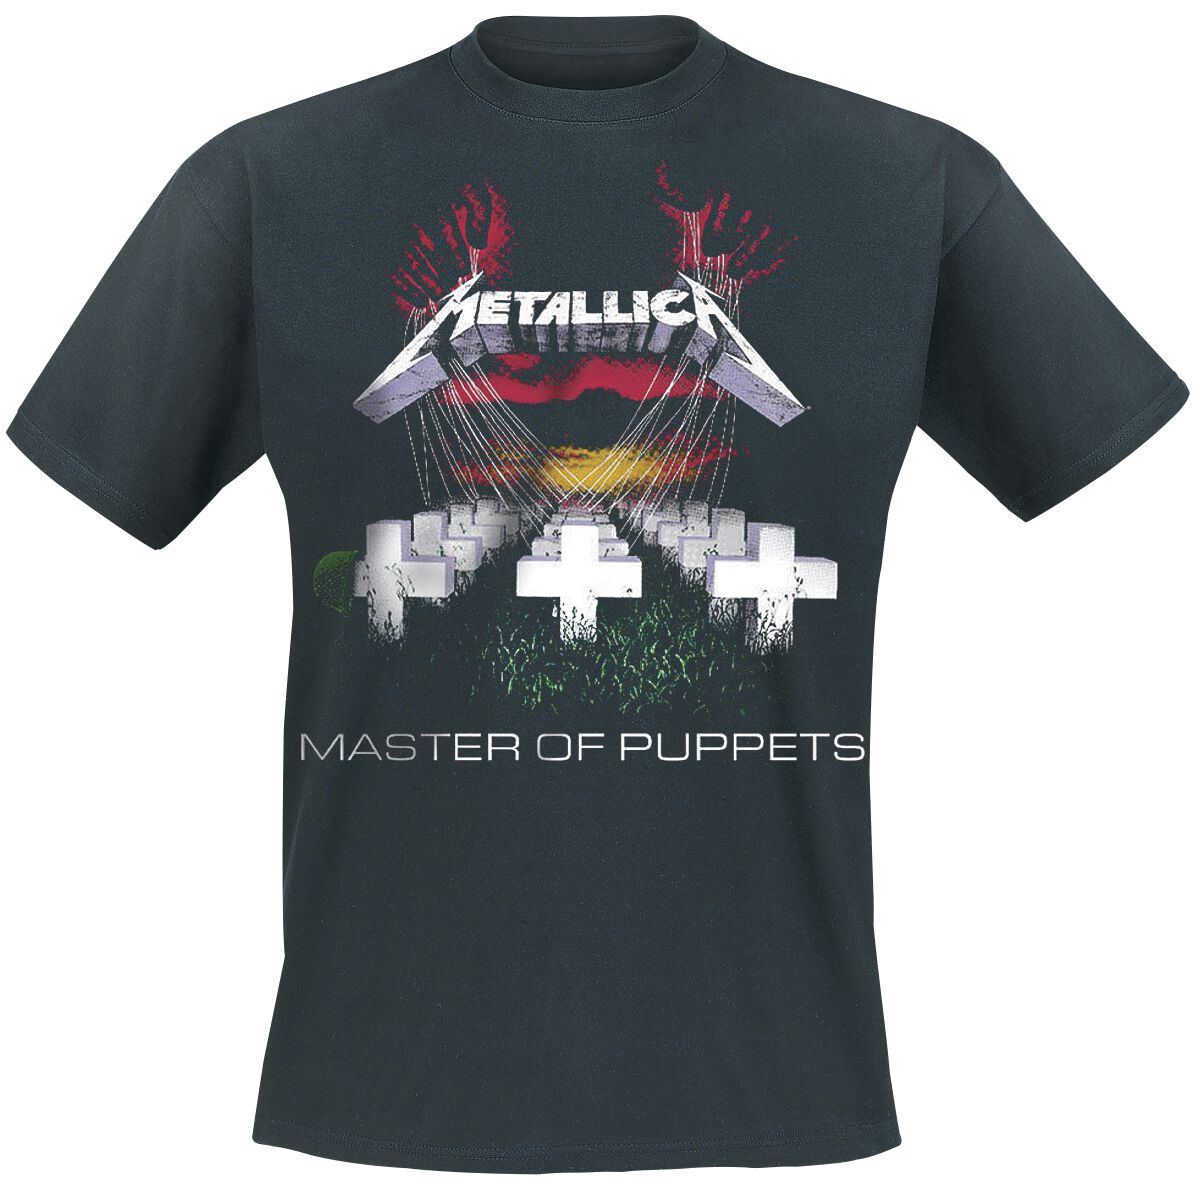 Metallica T-Shirt - Master Of Puppets - S bis 5XL - für Männer - Größe 4XL - schwarz  - Lizenziertes Merchandise!